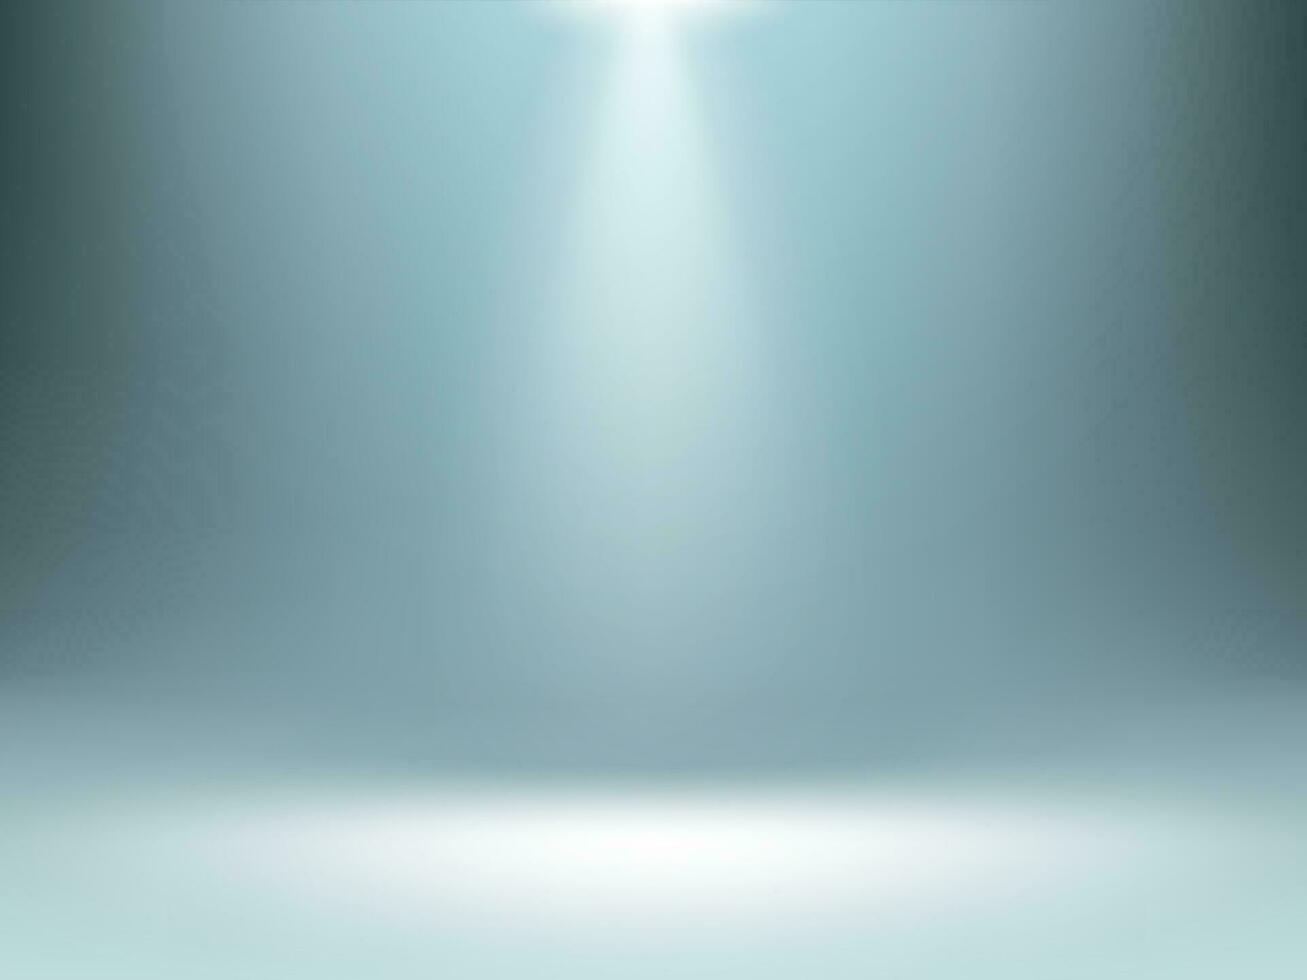 Grey gradient background, spotlights illumination vector